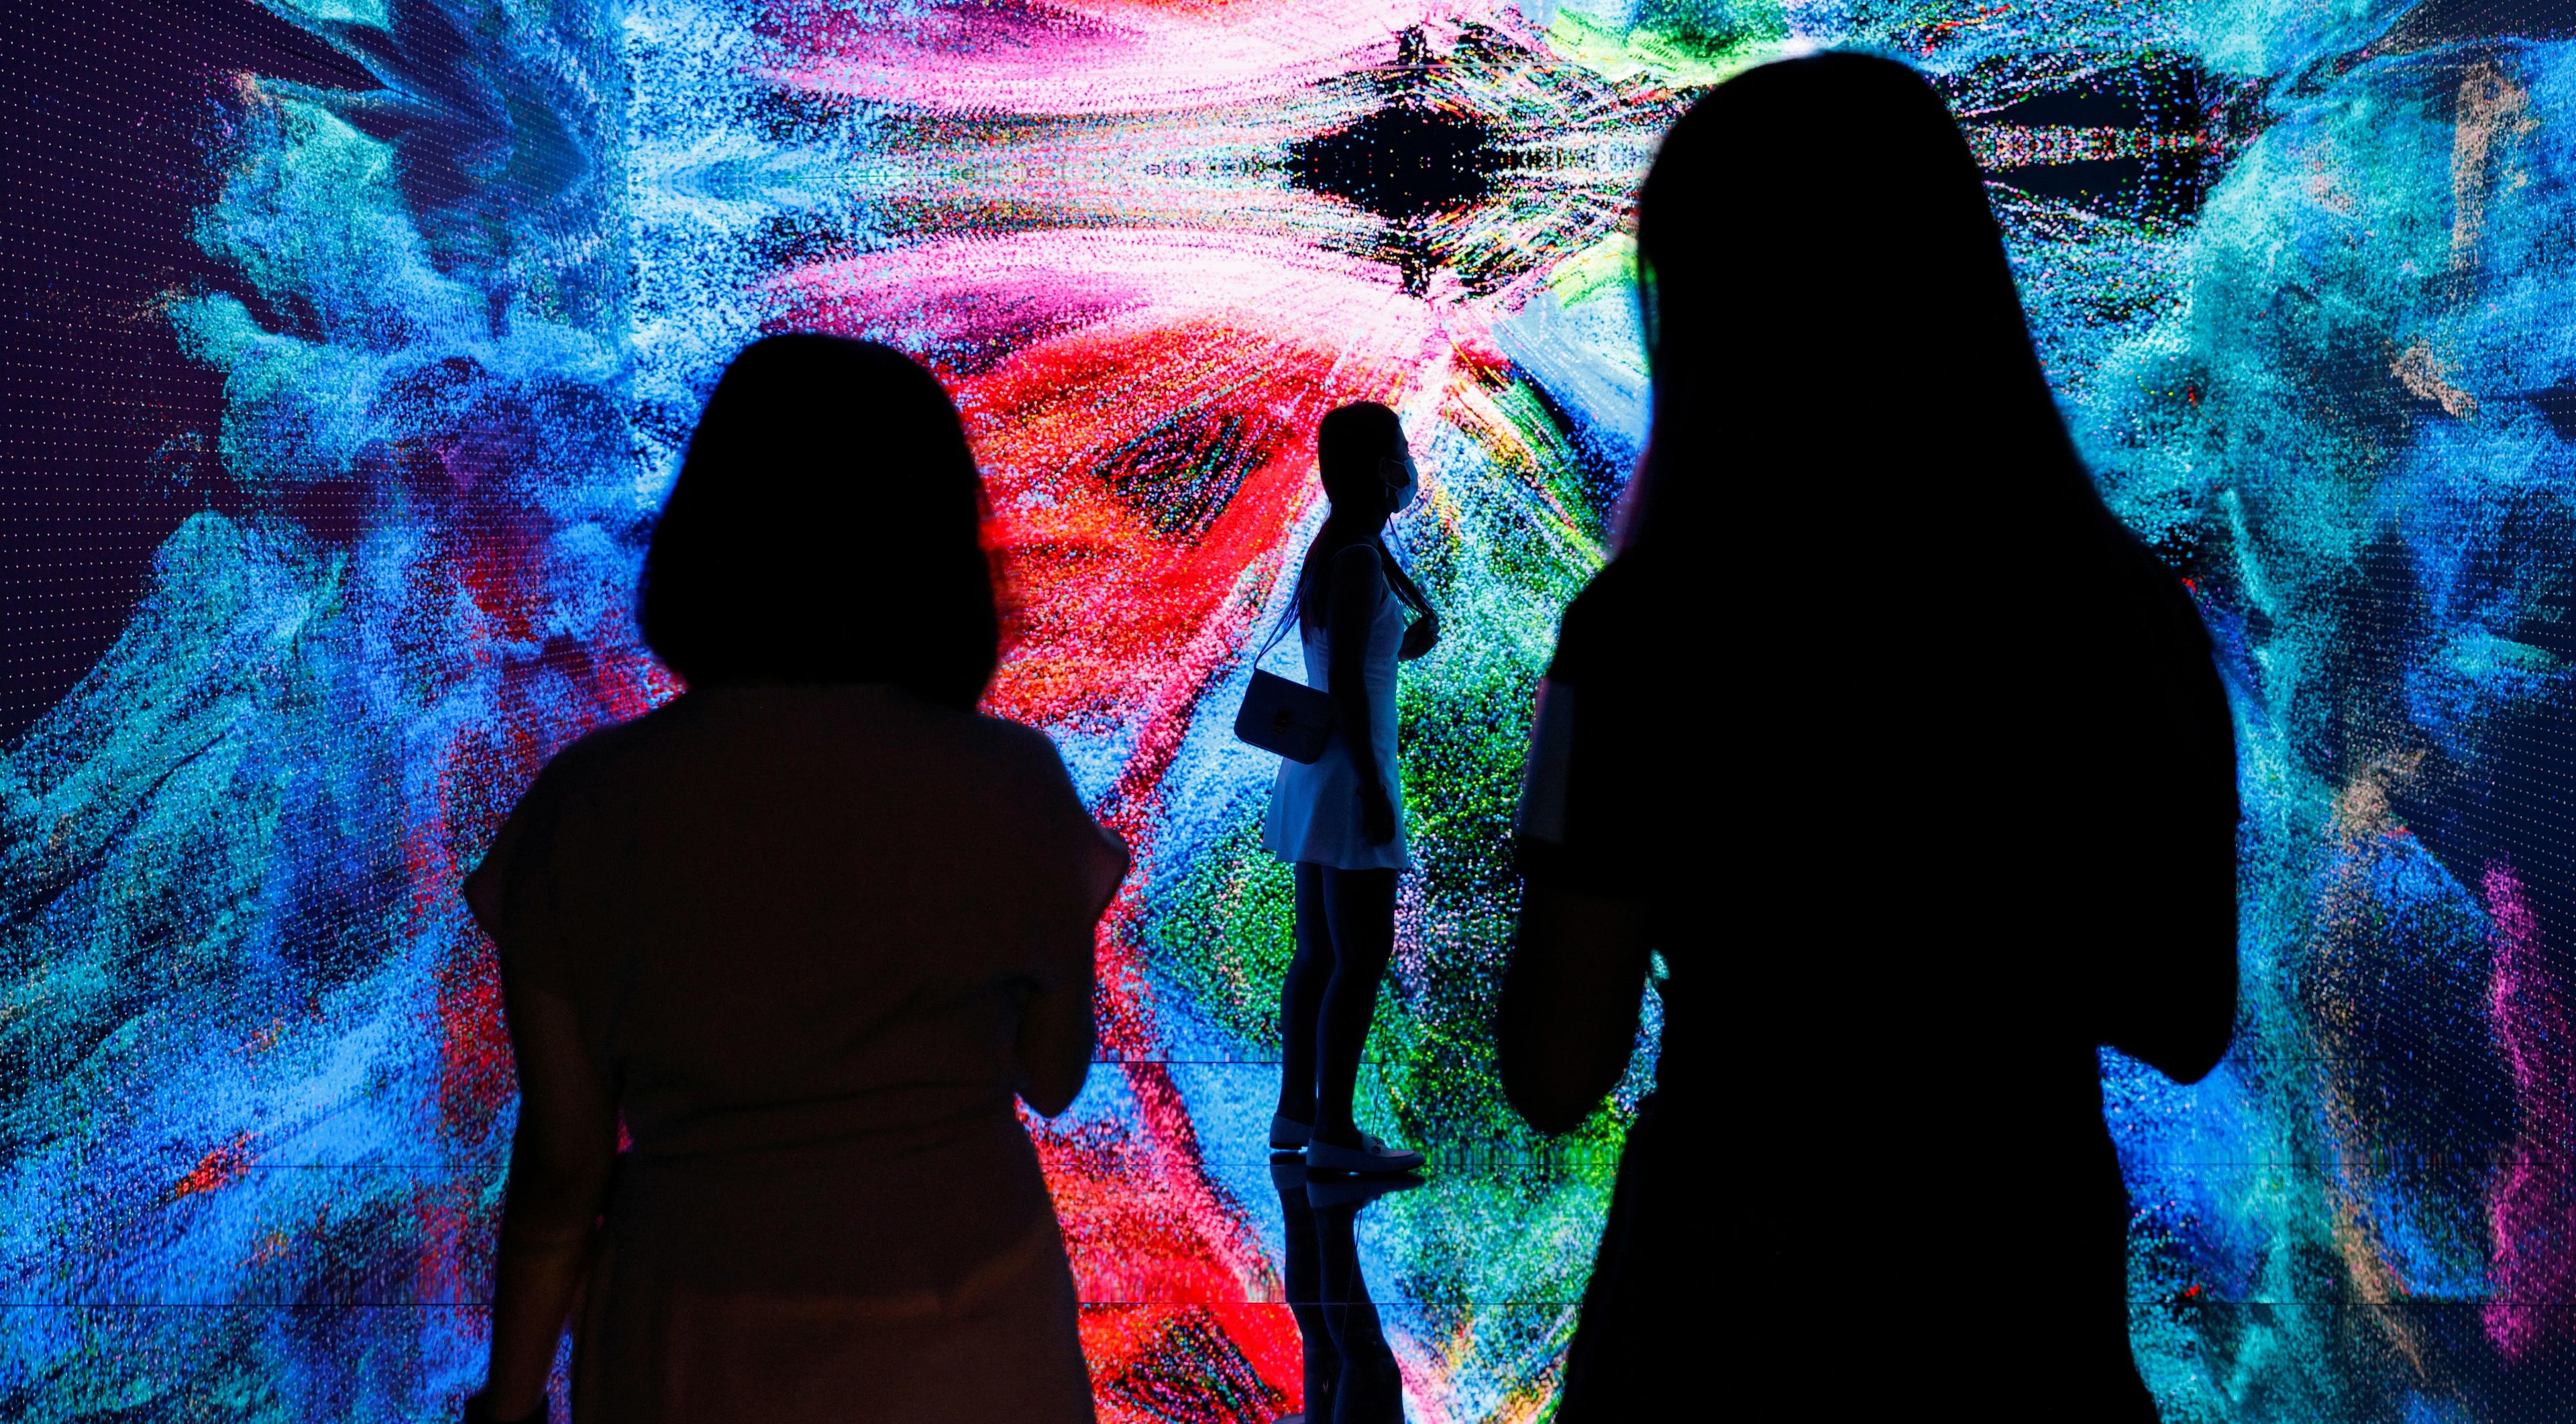 Visitantes en una exposición de arte inmersivo digital en China.